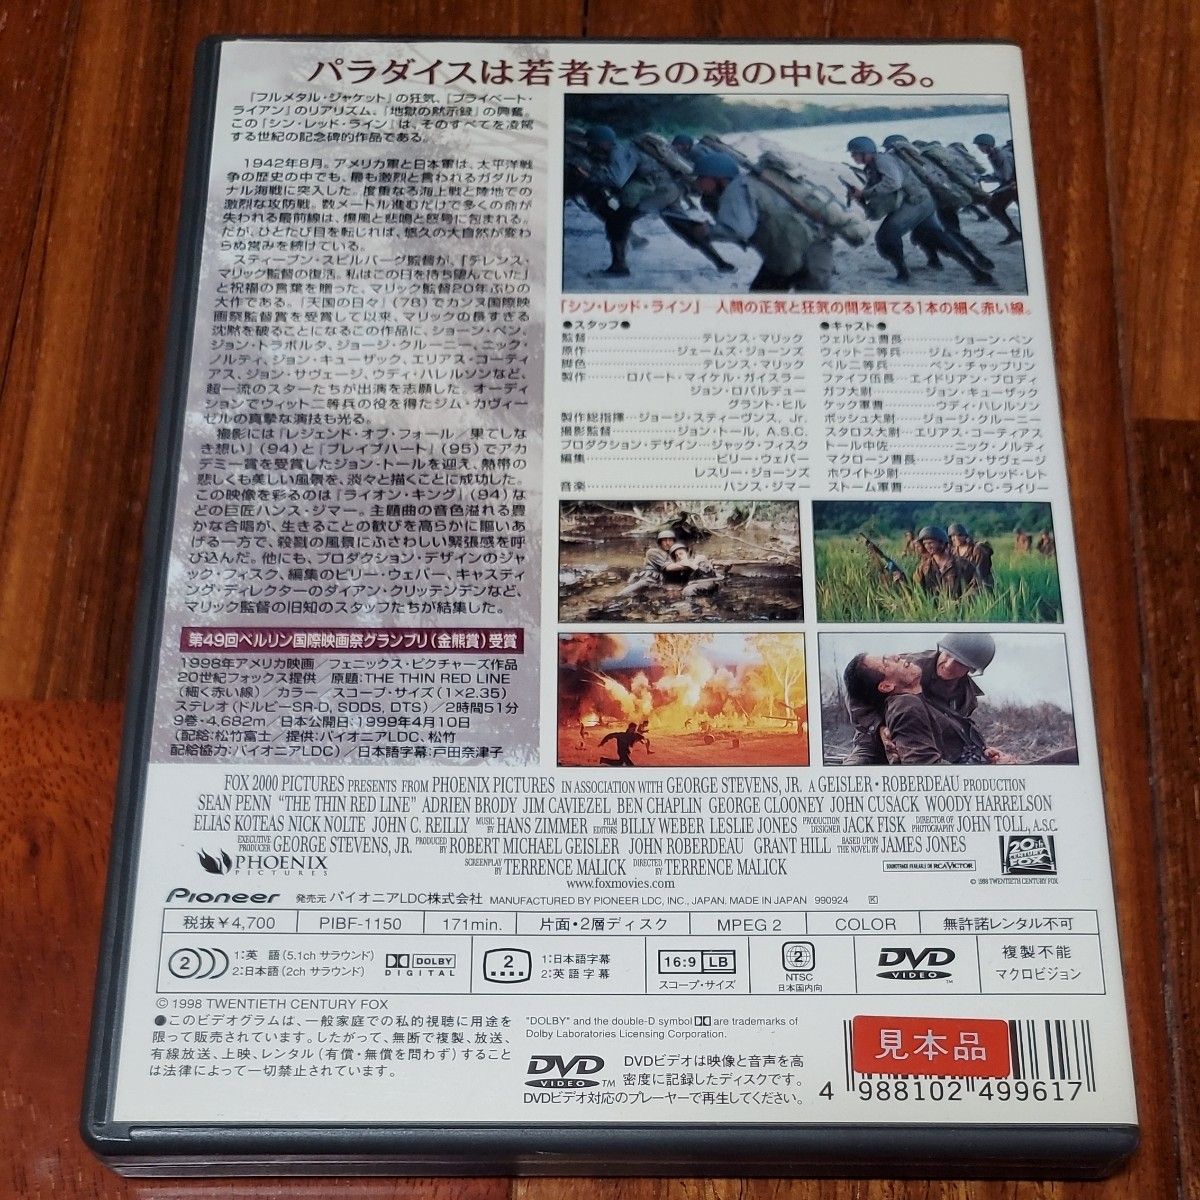 シン・レッド・ライン('98米)」見本品 DVD